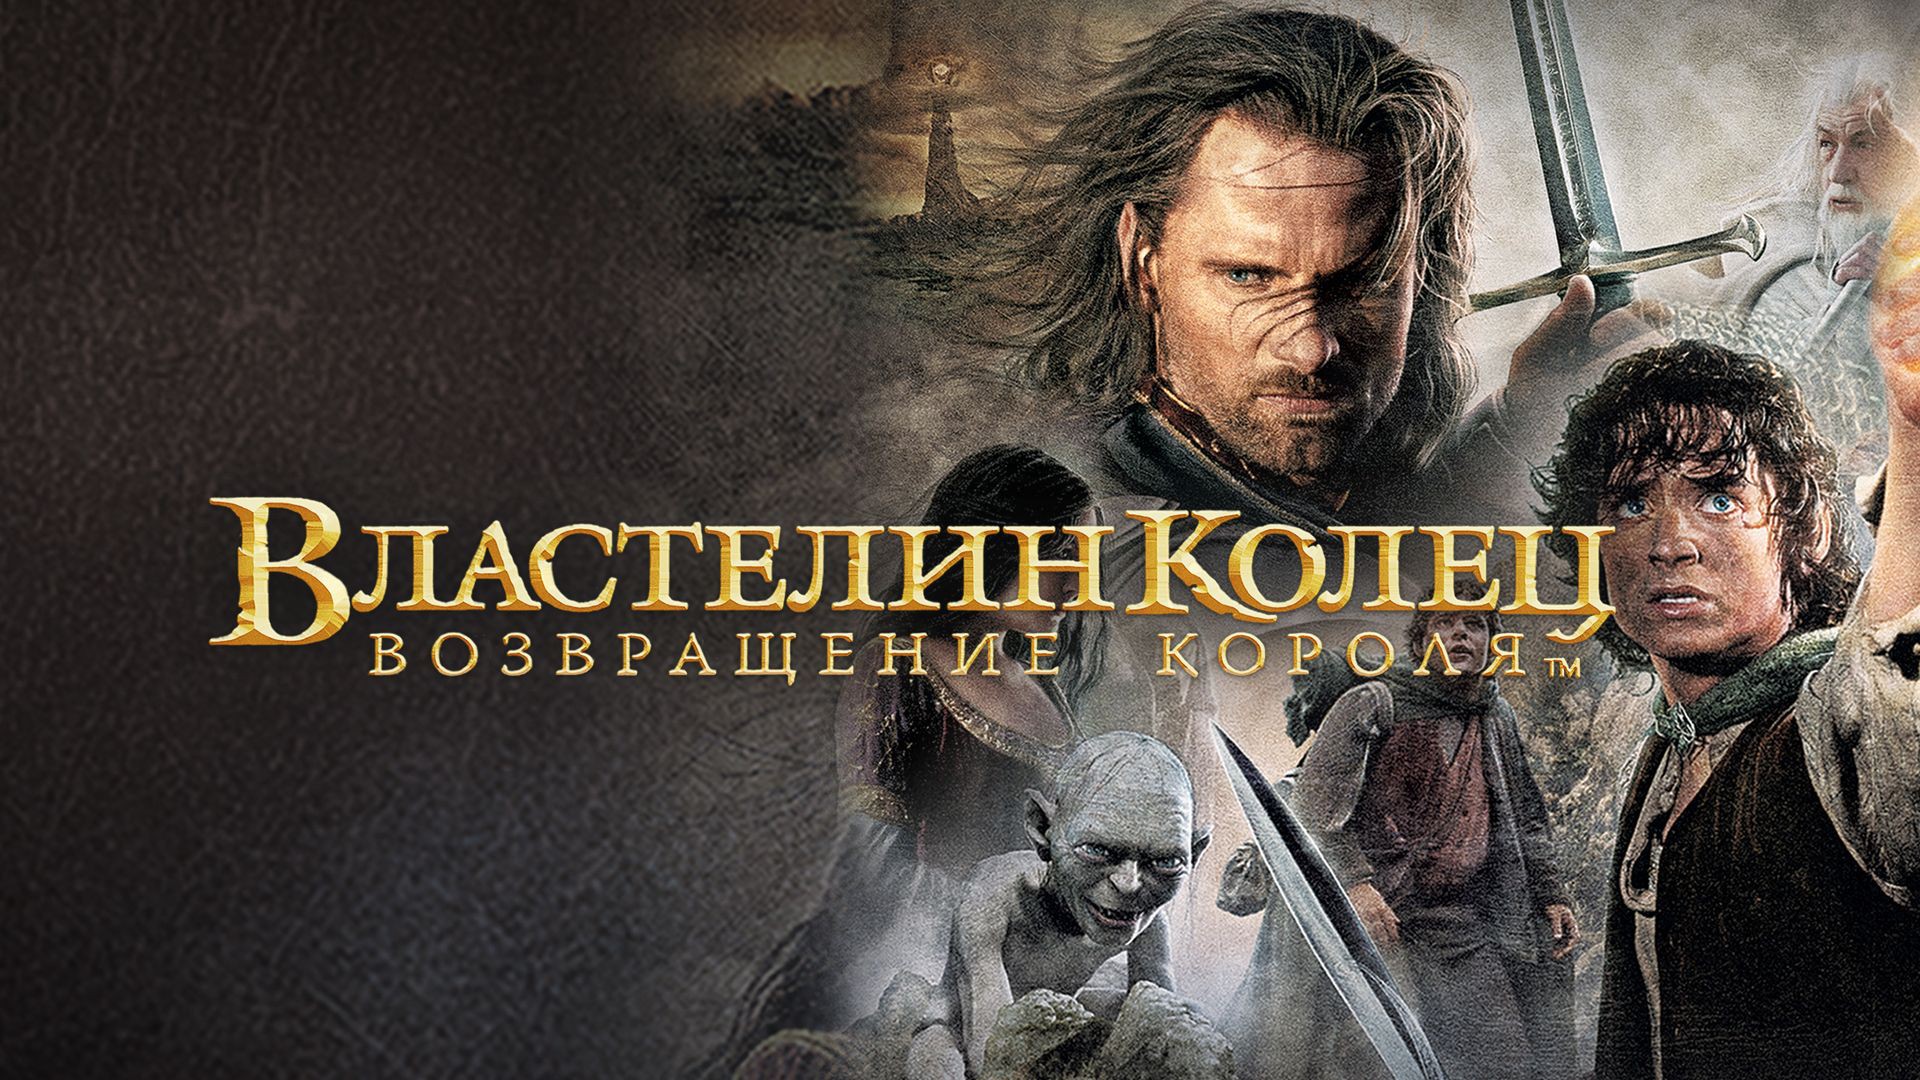 Властелин колец: Возвращение Короля (2003) — Русский трейлер